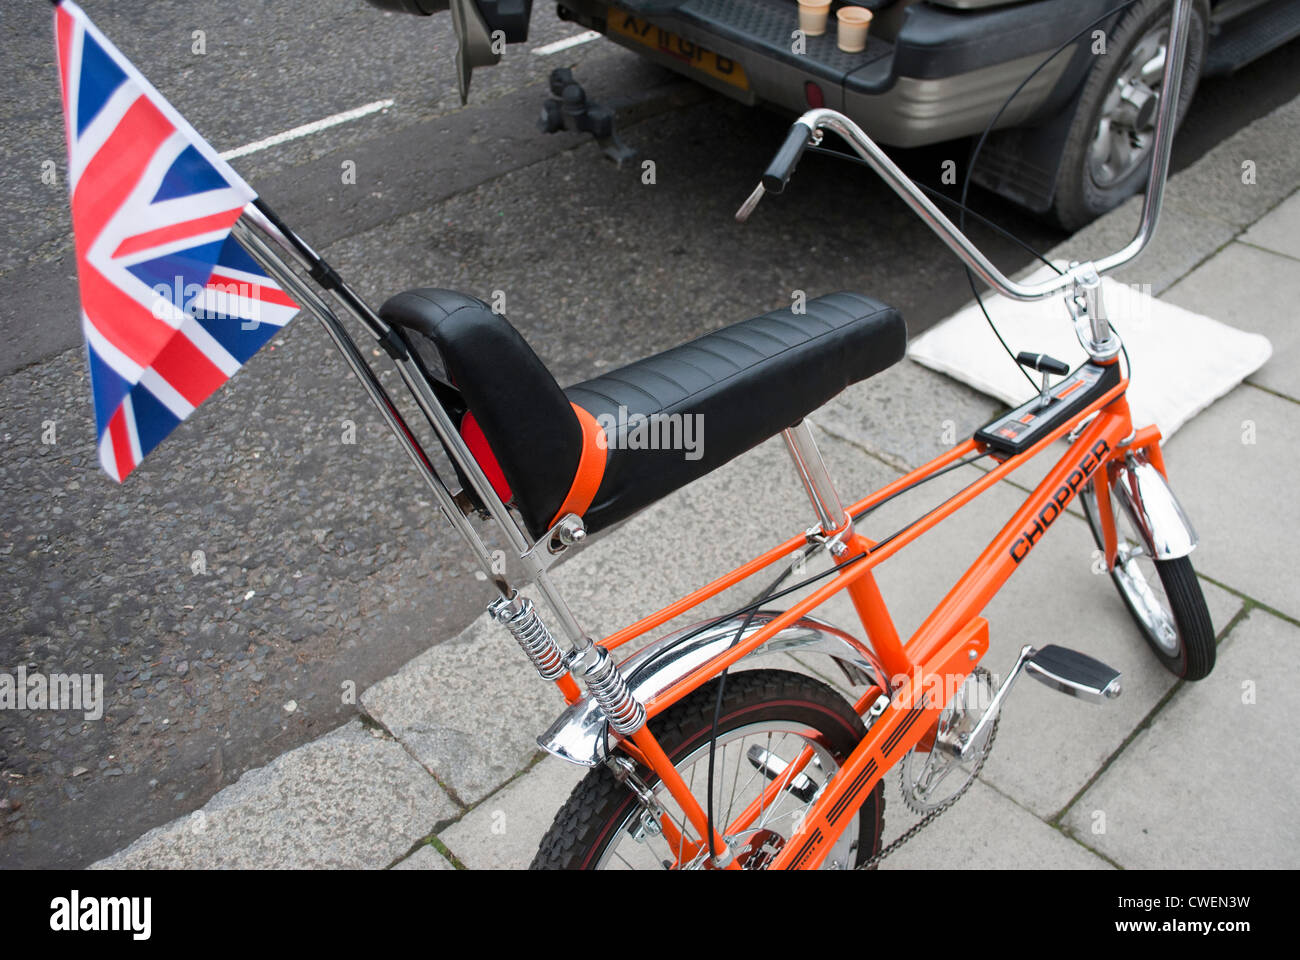 Orange-Chopper Fahrrad mit Anschluß-Markierungsfahne Wimpel geparkt auf Stein gekennzeichnet Bürgersteig neben Auto Stockfoto